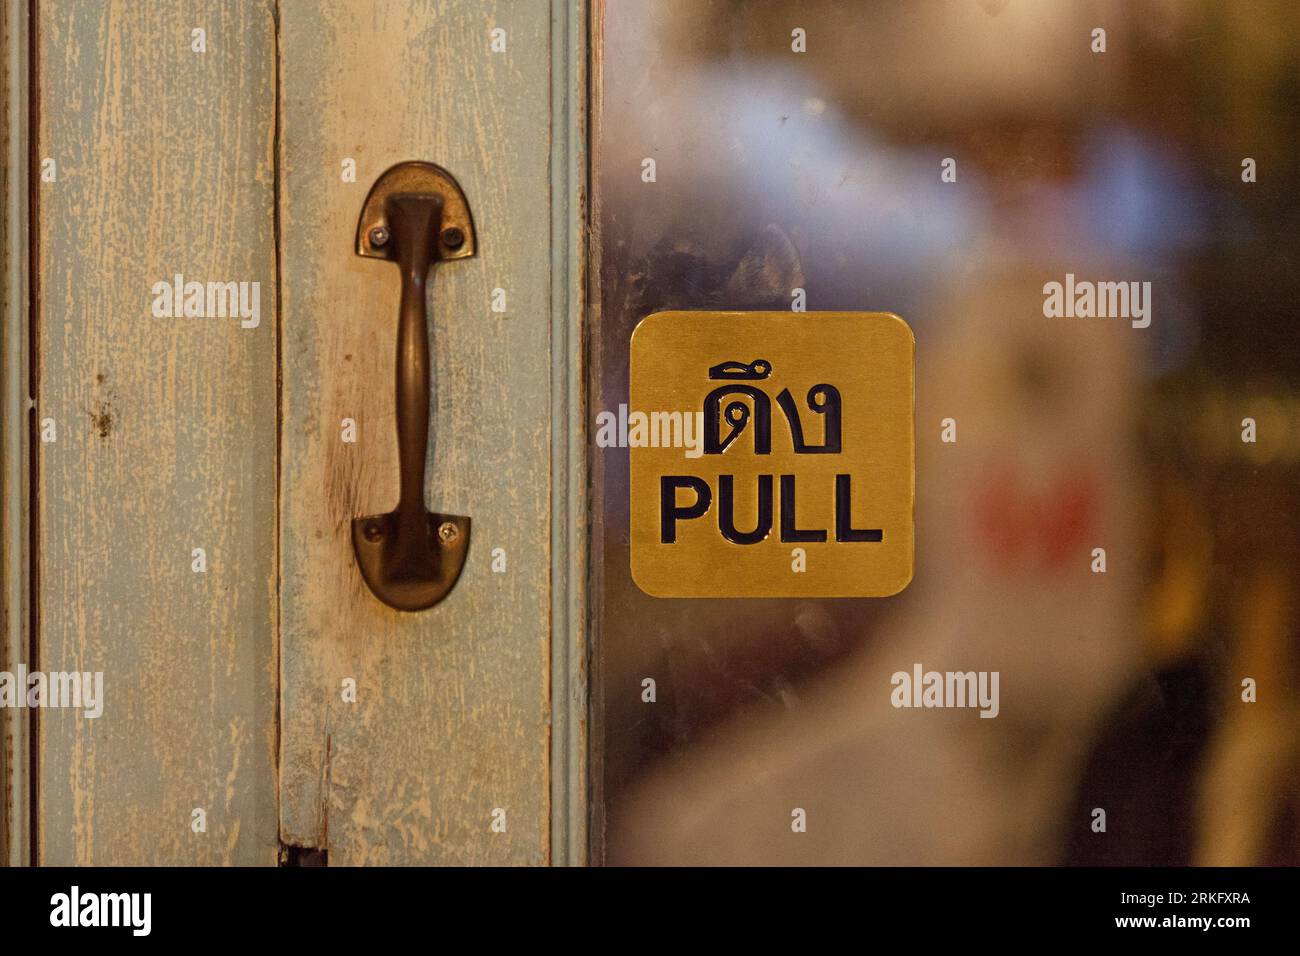 Halten Sie sich an der Tür eines Geschäfts fest und sagen Sie auf Thailändisch und Englisch „Pull“. Stockfoto